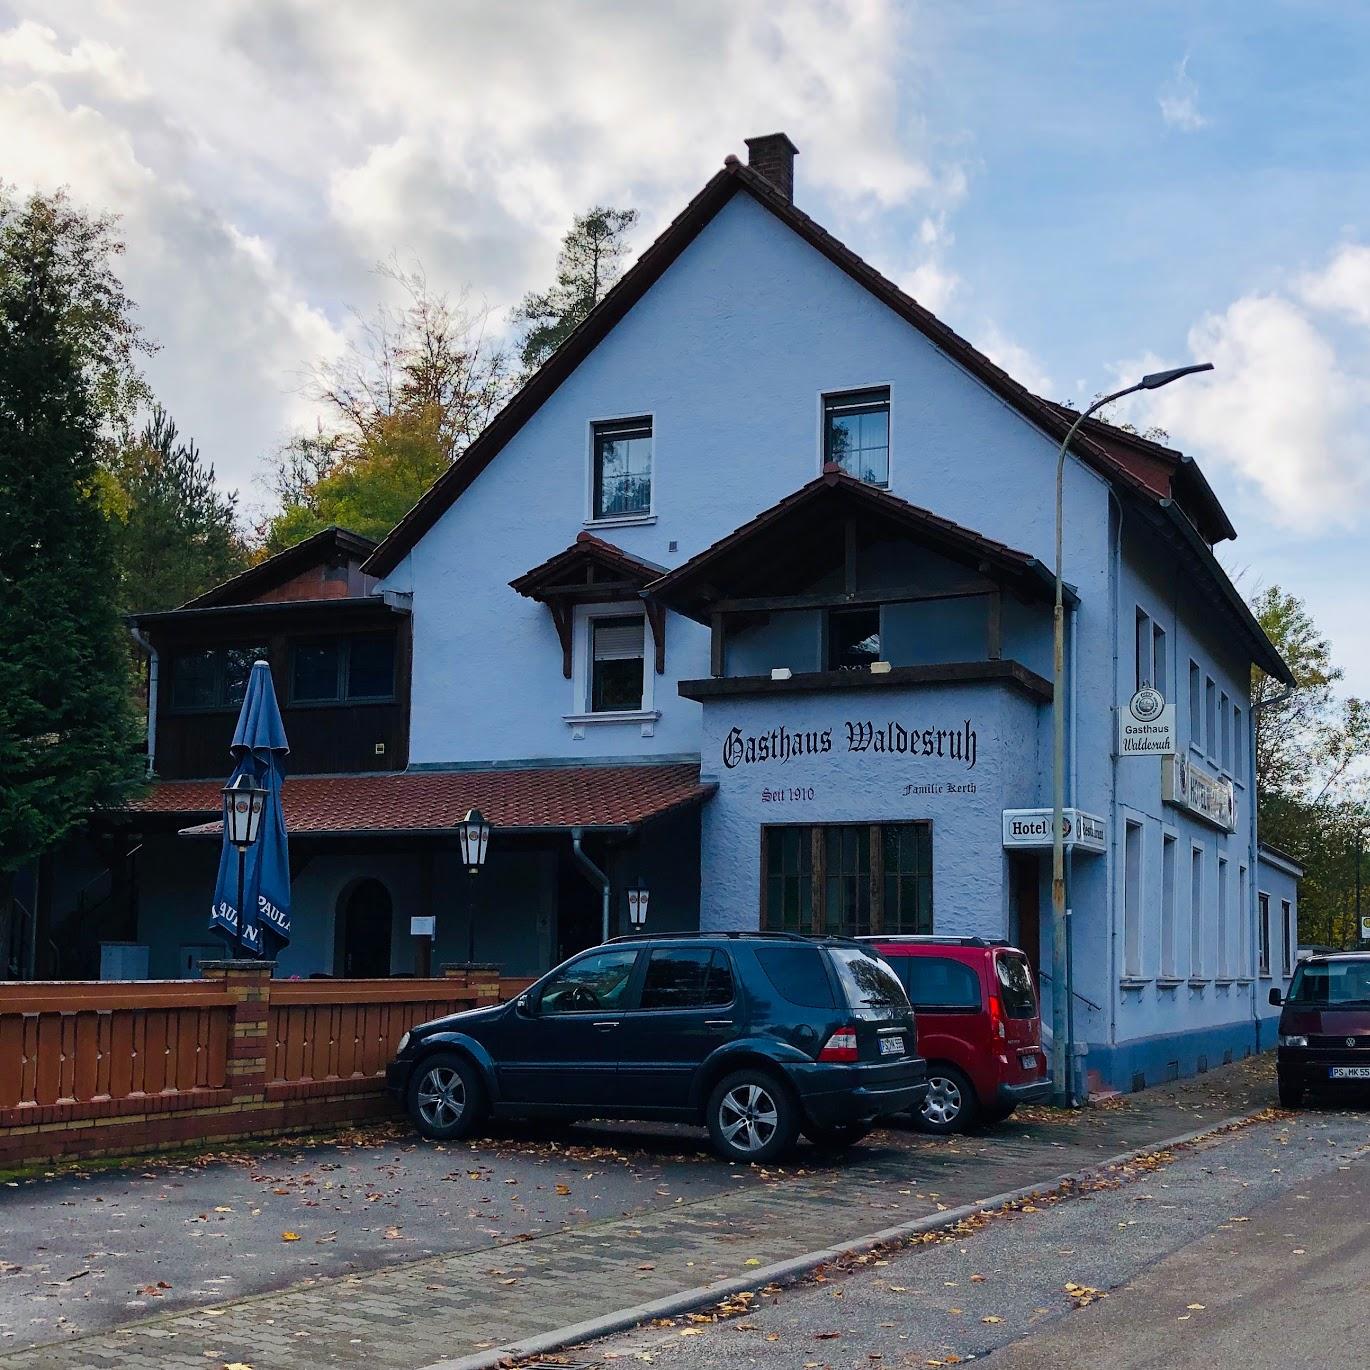 Restaurant "Gasthaus Waldesruh" in Hauenstein